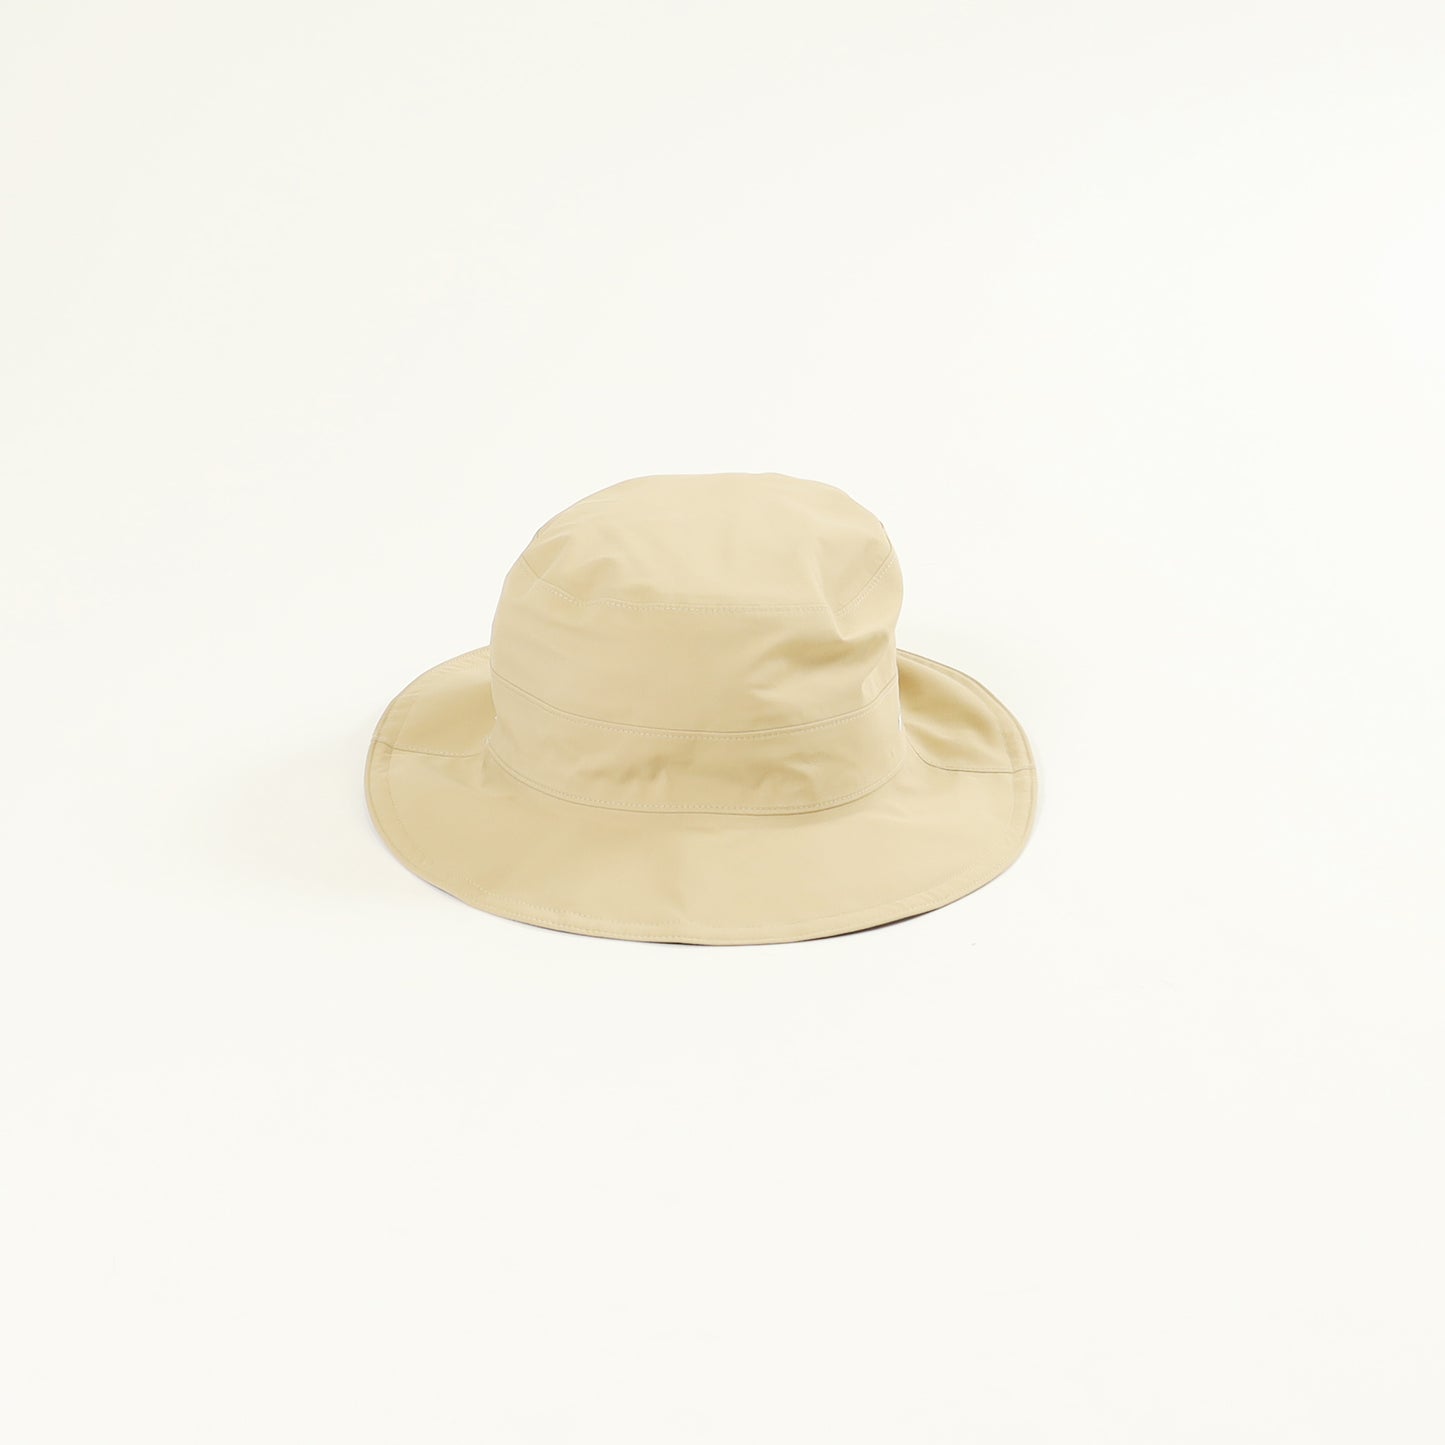 【mont-bell】Meadow Hat Men's